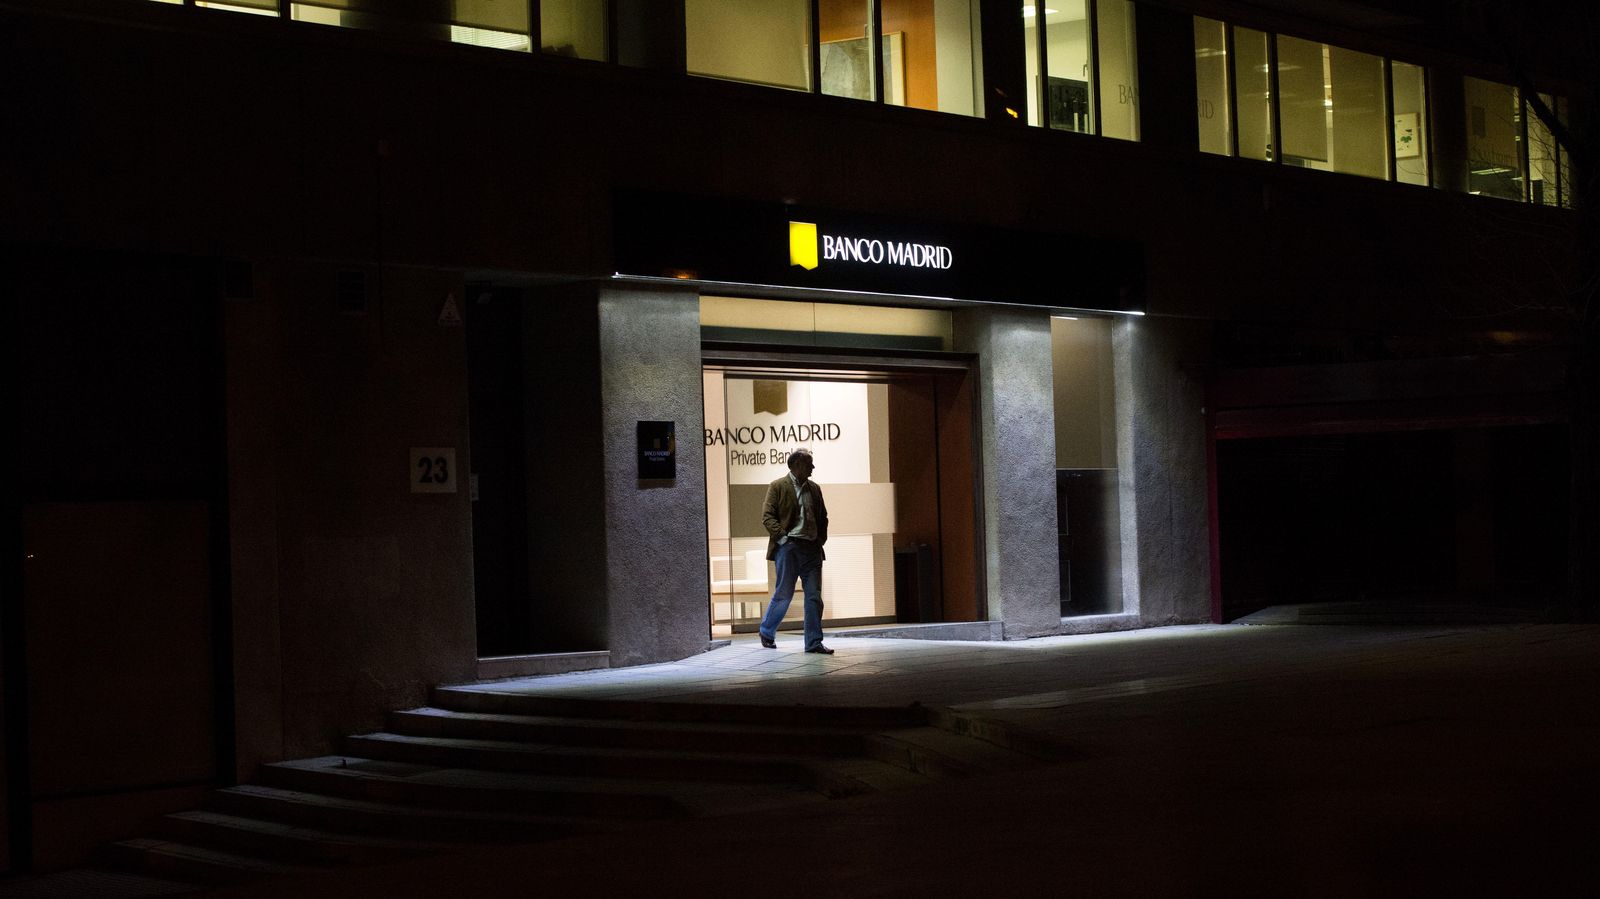 Foto: La entrada a la sede principal de Banco Madrid. (foto: Pablo López Learte)